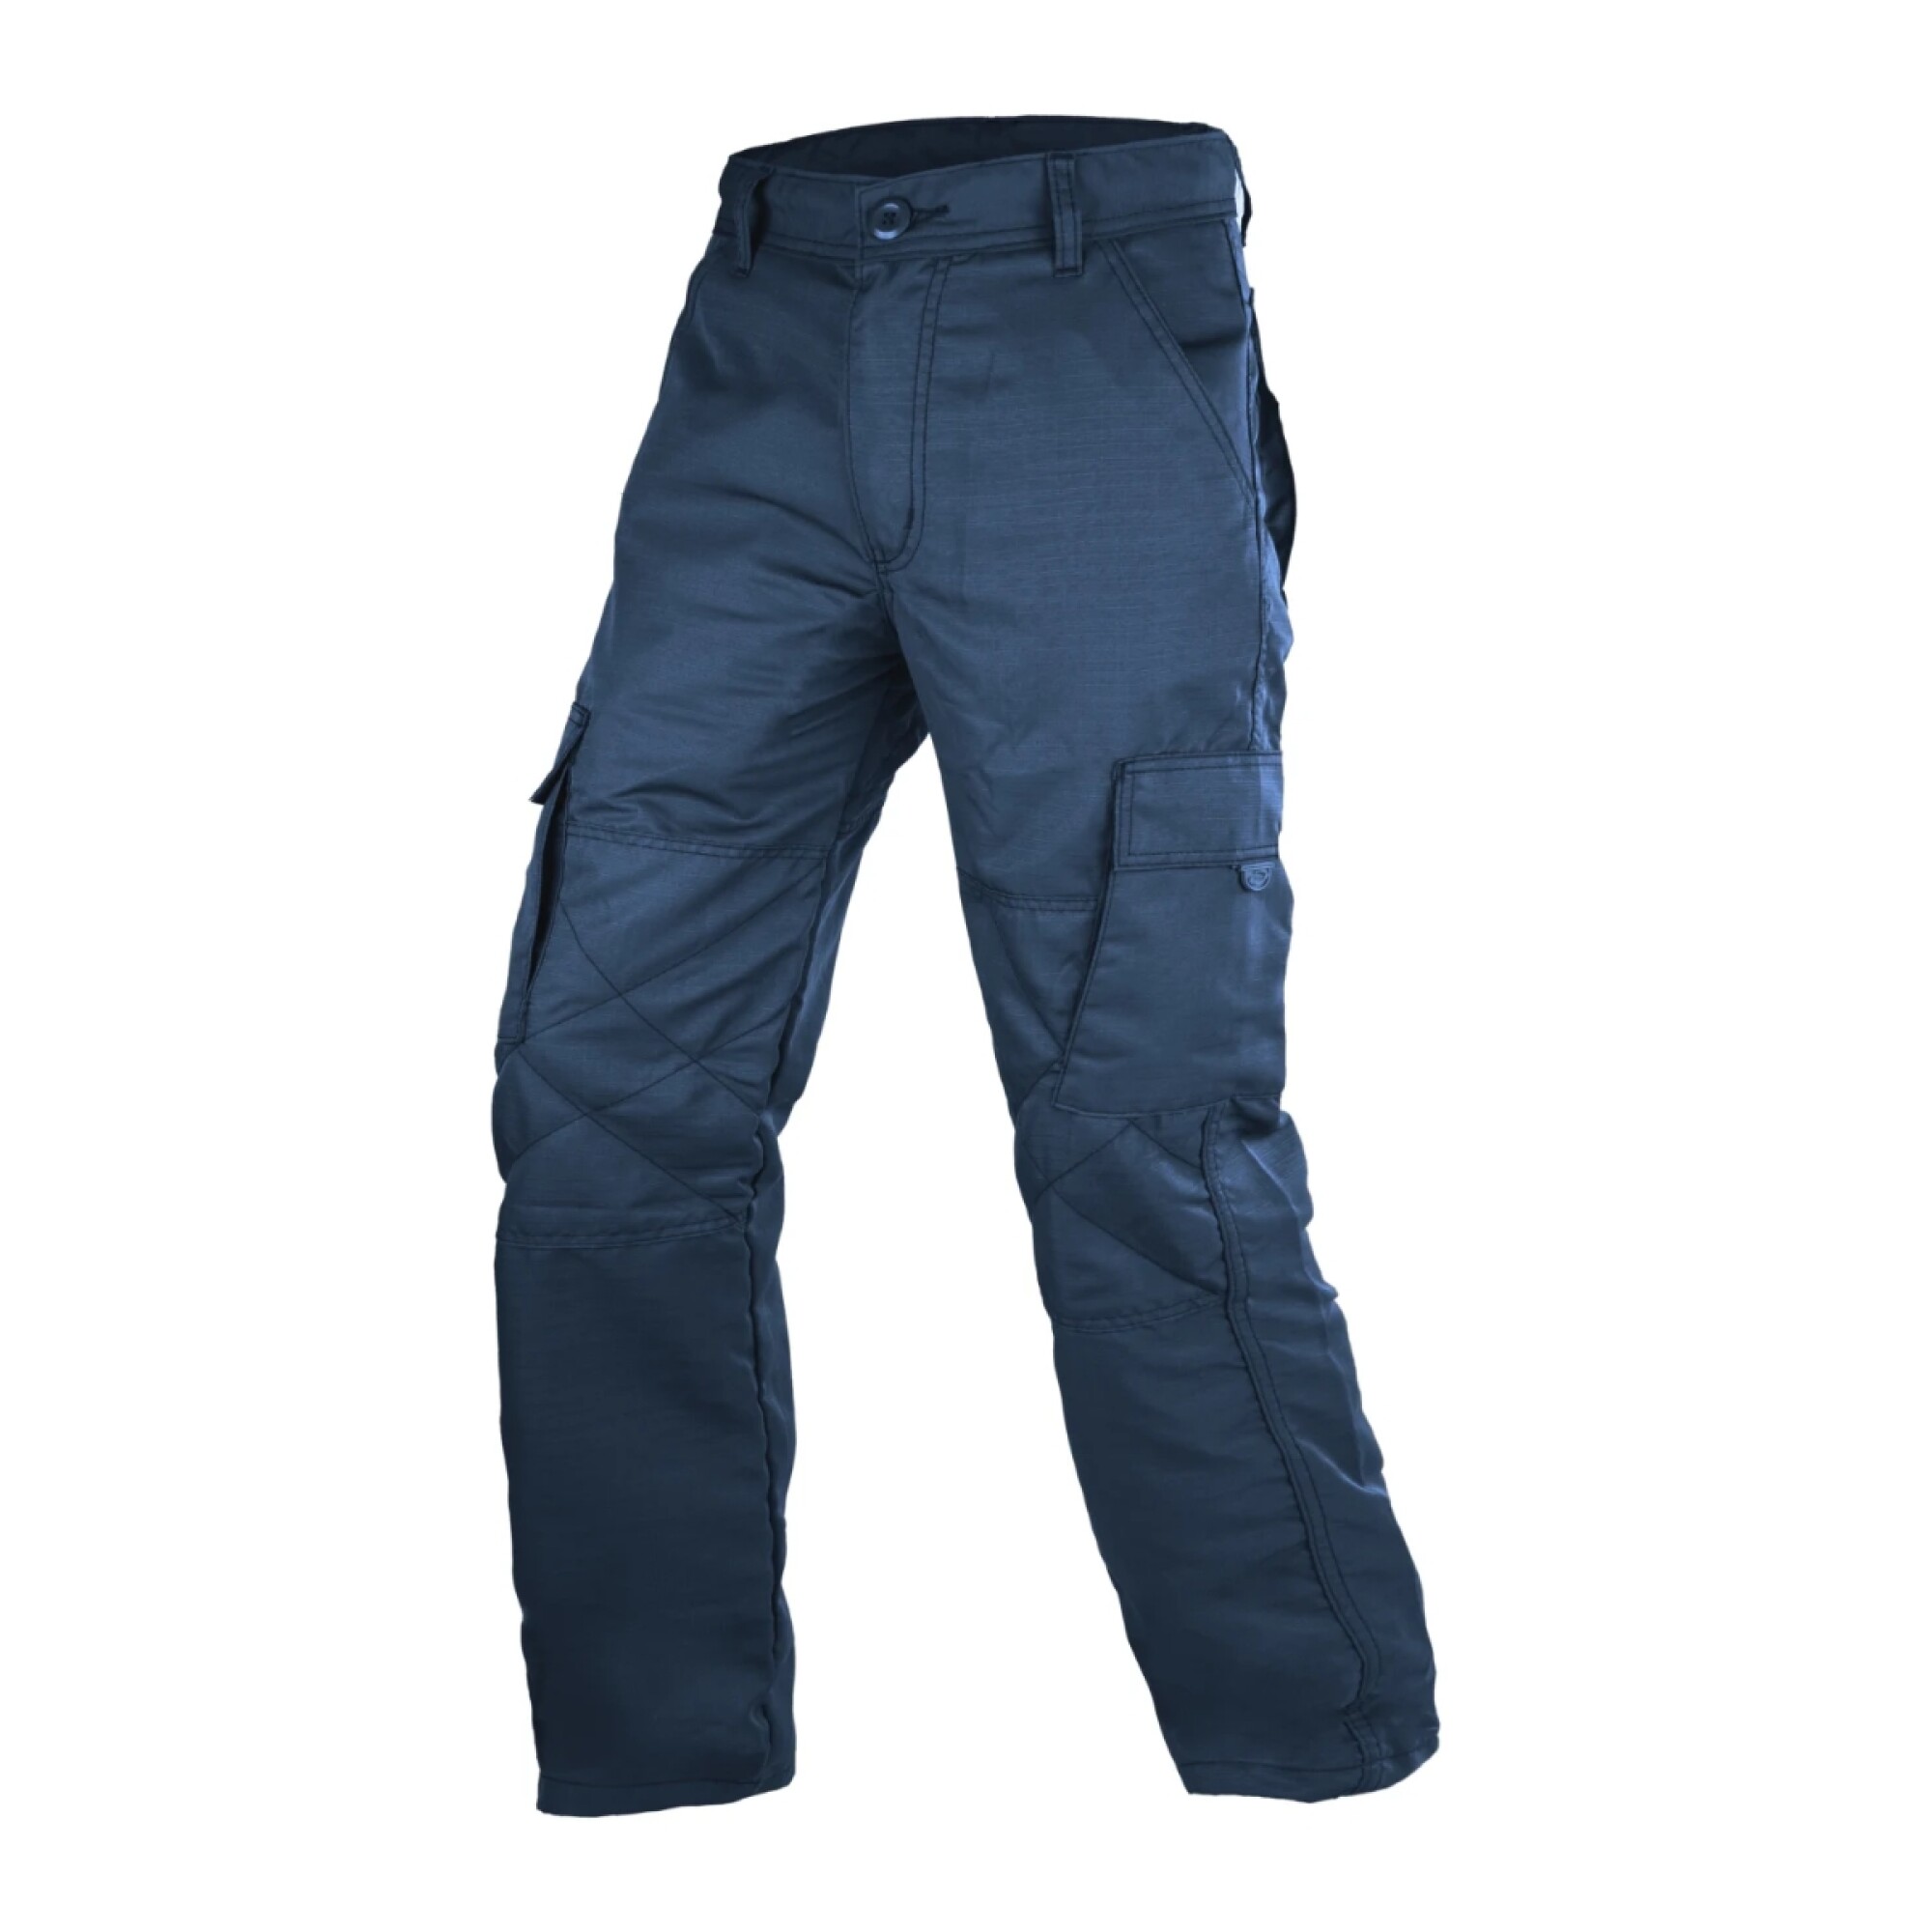 Ipso Combi 2 - Azul - Pantalón Running Hombre 